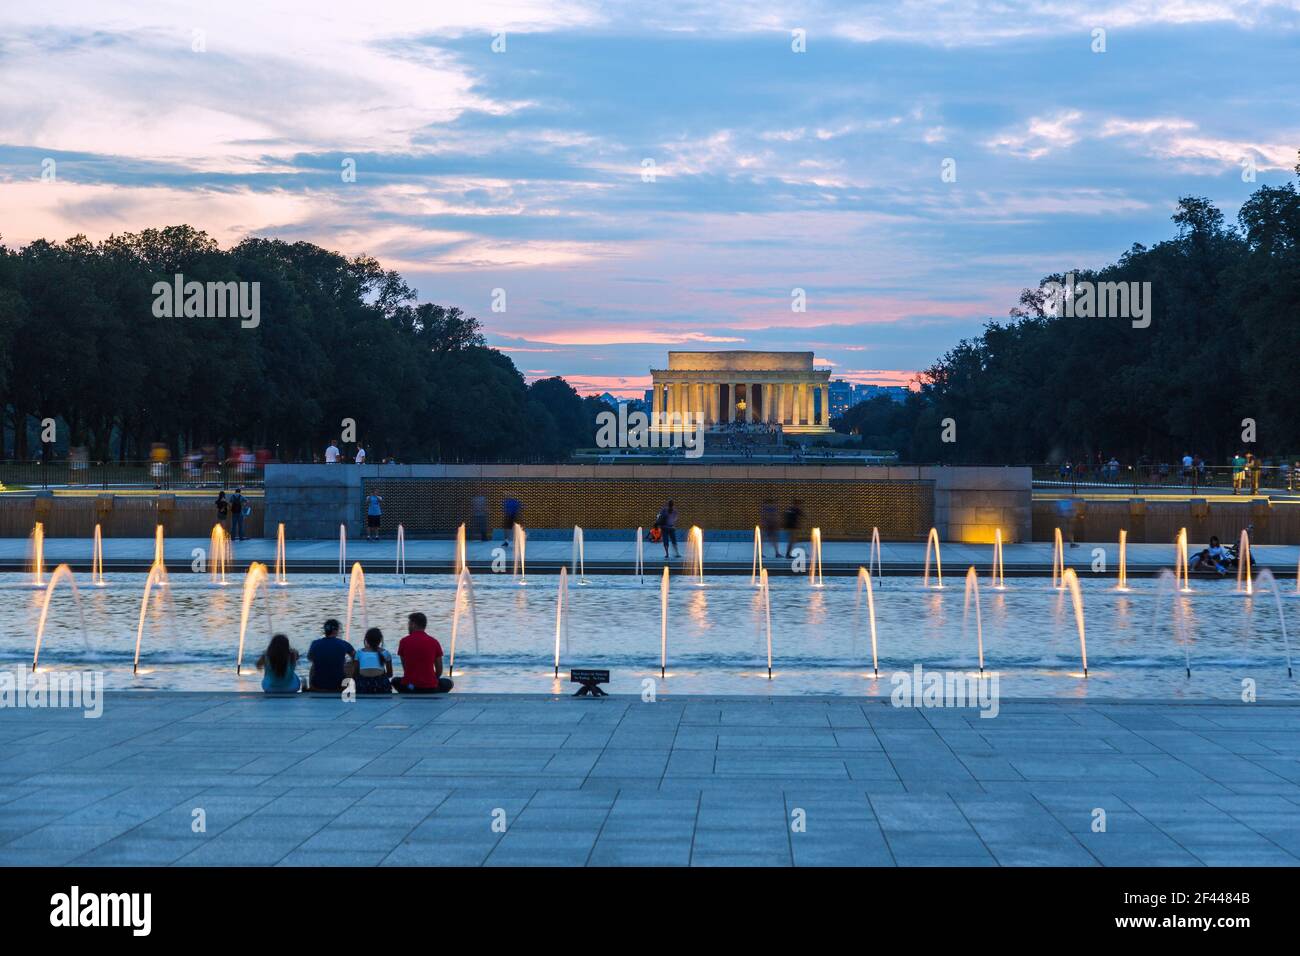 Geografia / viaggio, Stati Uniti, Washington, D. C., centro commerciale nazionale, Memoriale nazionale della seconda guerra mondiale, piscina arcobaleno, Lincoln Memorial, solo per uso editoriale Foto Stock